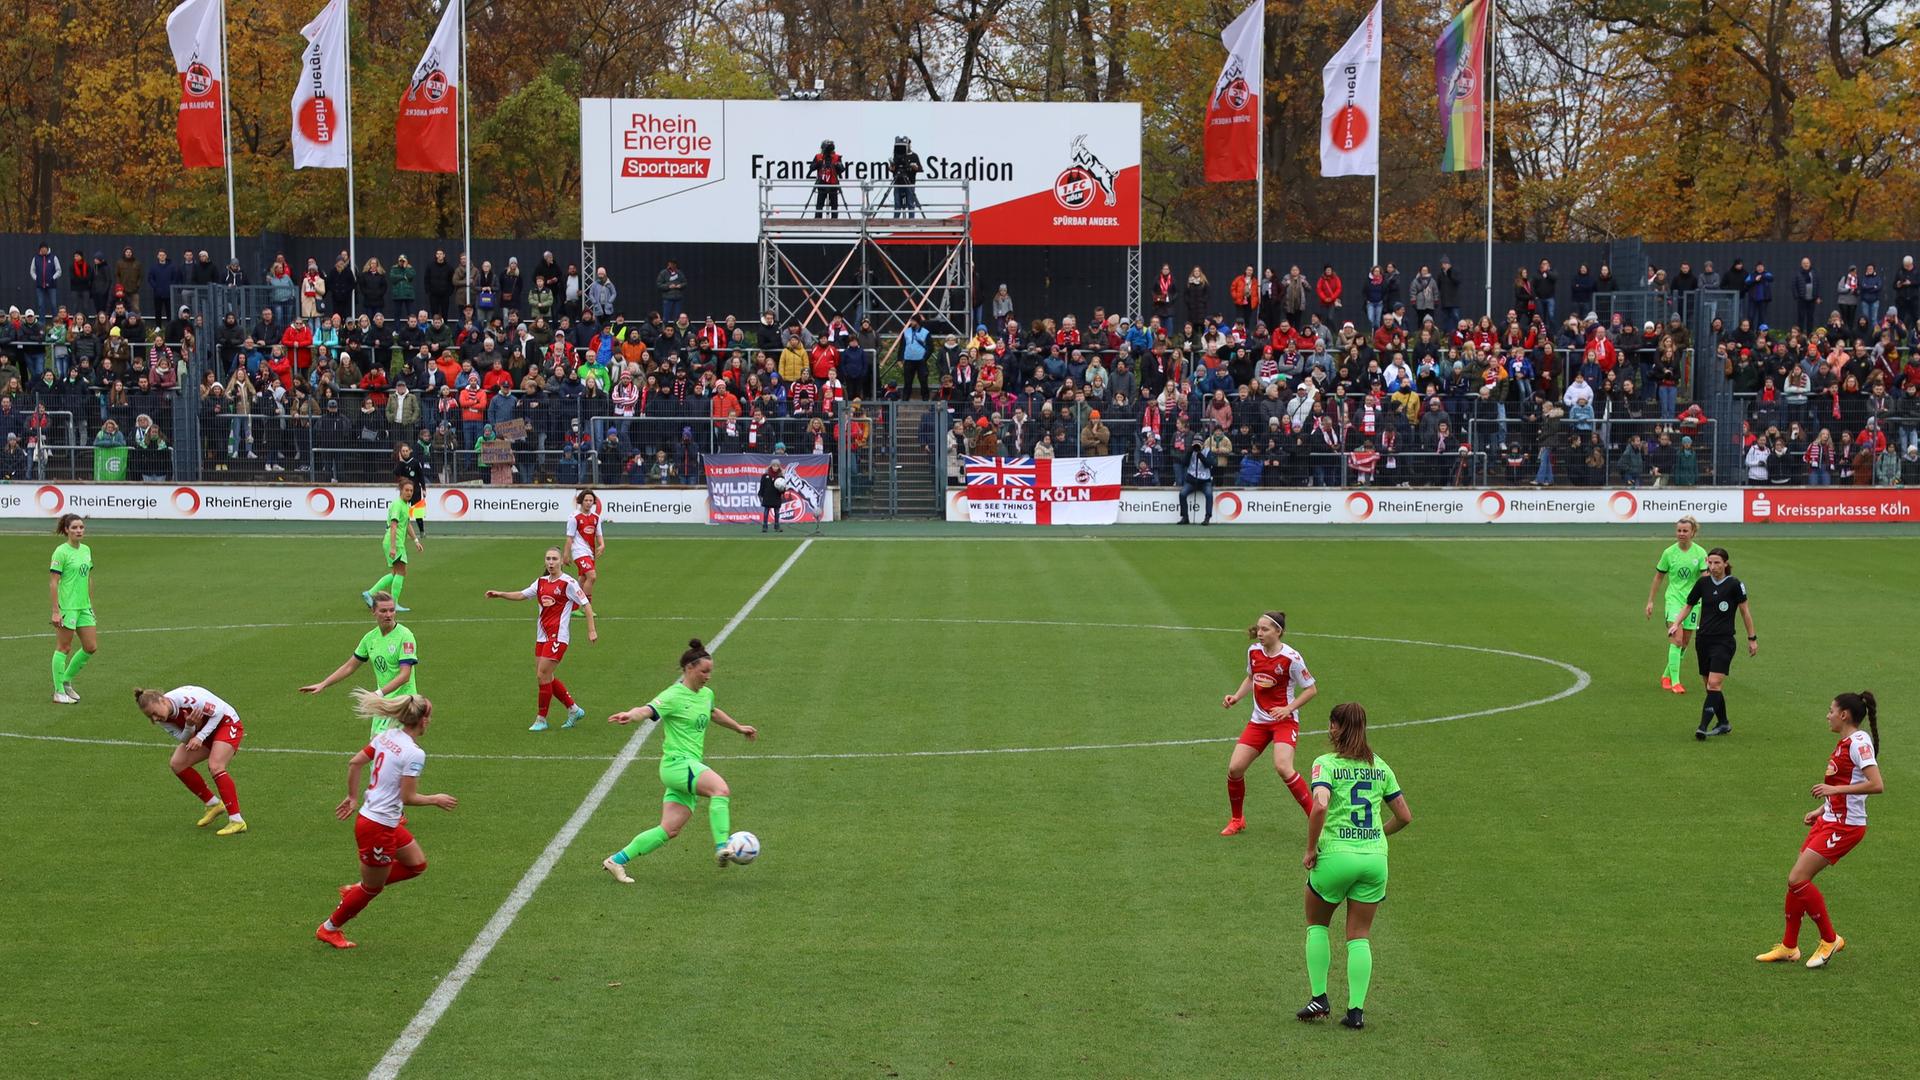 Volle Tribünen in der Frauen-Bundesliga, hier beim Spiel zwischen dem 1. FC Köln und dem VfL Wolfsburg.